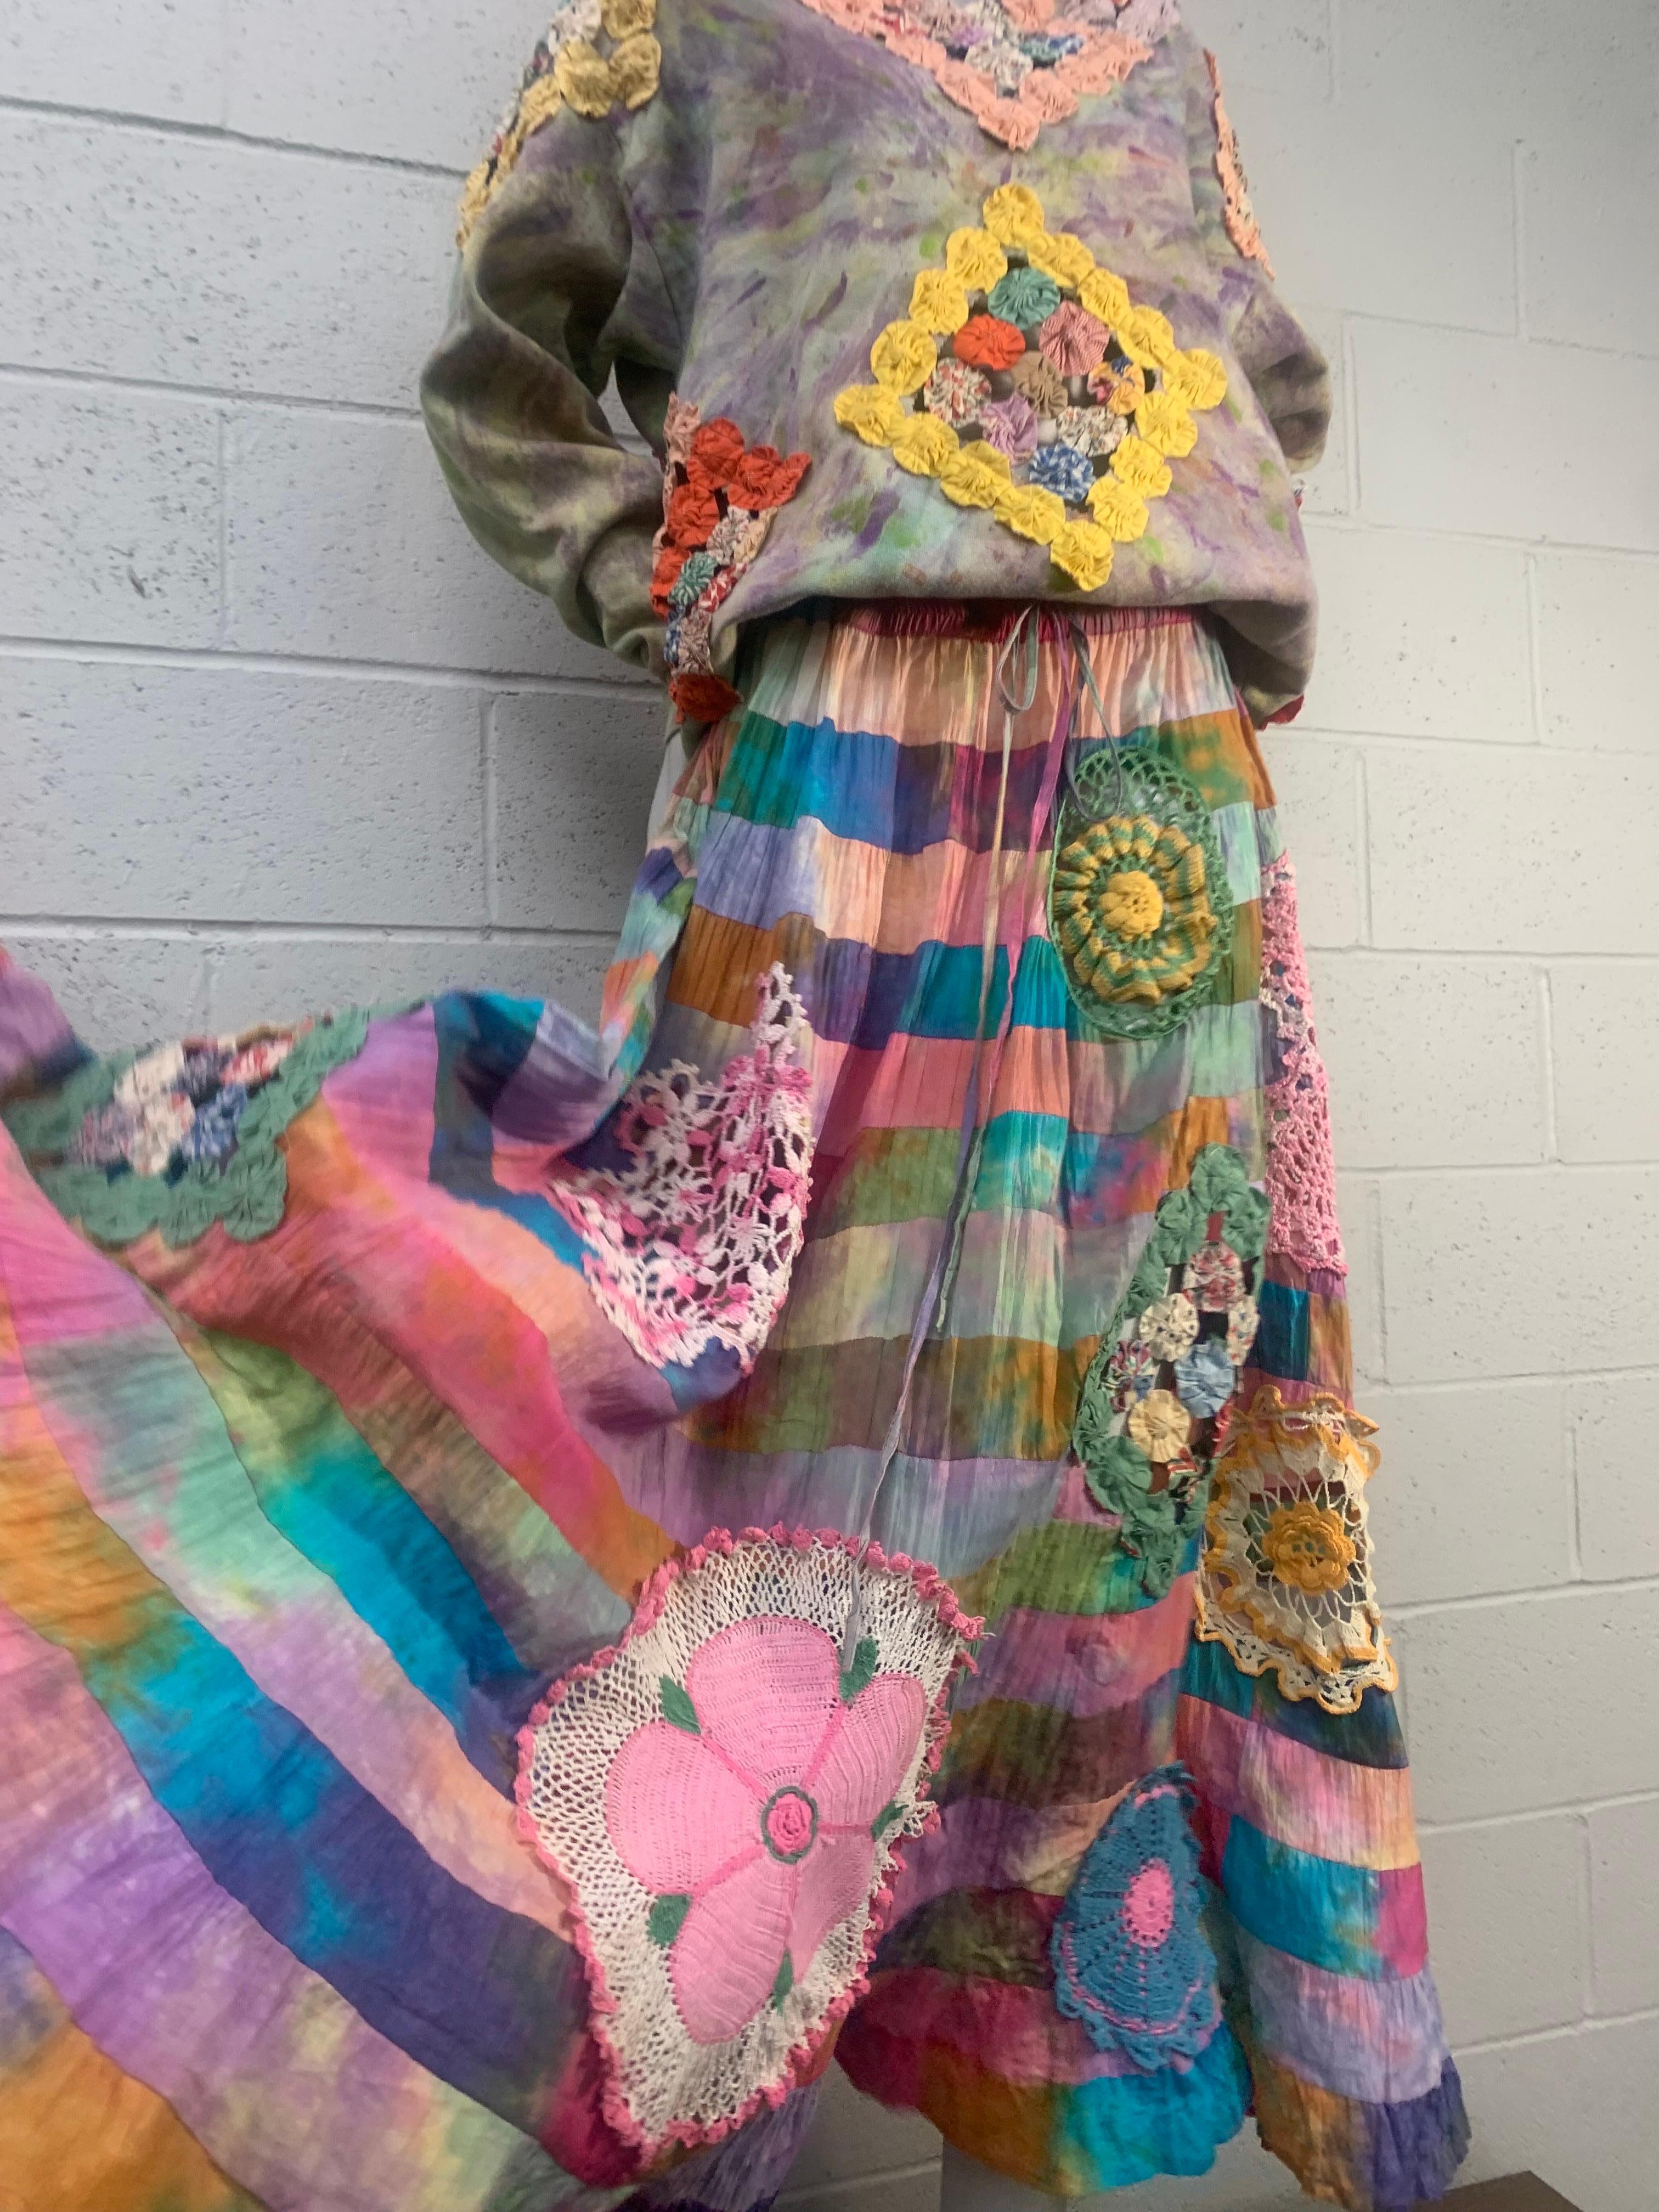 Torso Creations - Ensemble 2 pièces en coton Tie Dye Patchwork Crochet Quilted Skirt & Pullover :  La jupe est une jupe longue en patchwork à plusieurs niveaux et froncée, avec des empiècements en crochet colorés. Le haut est un pull en coton teint